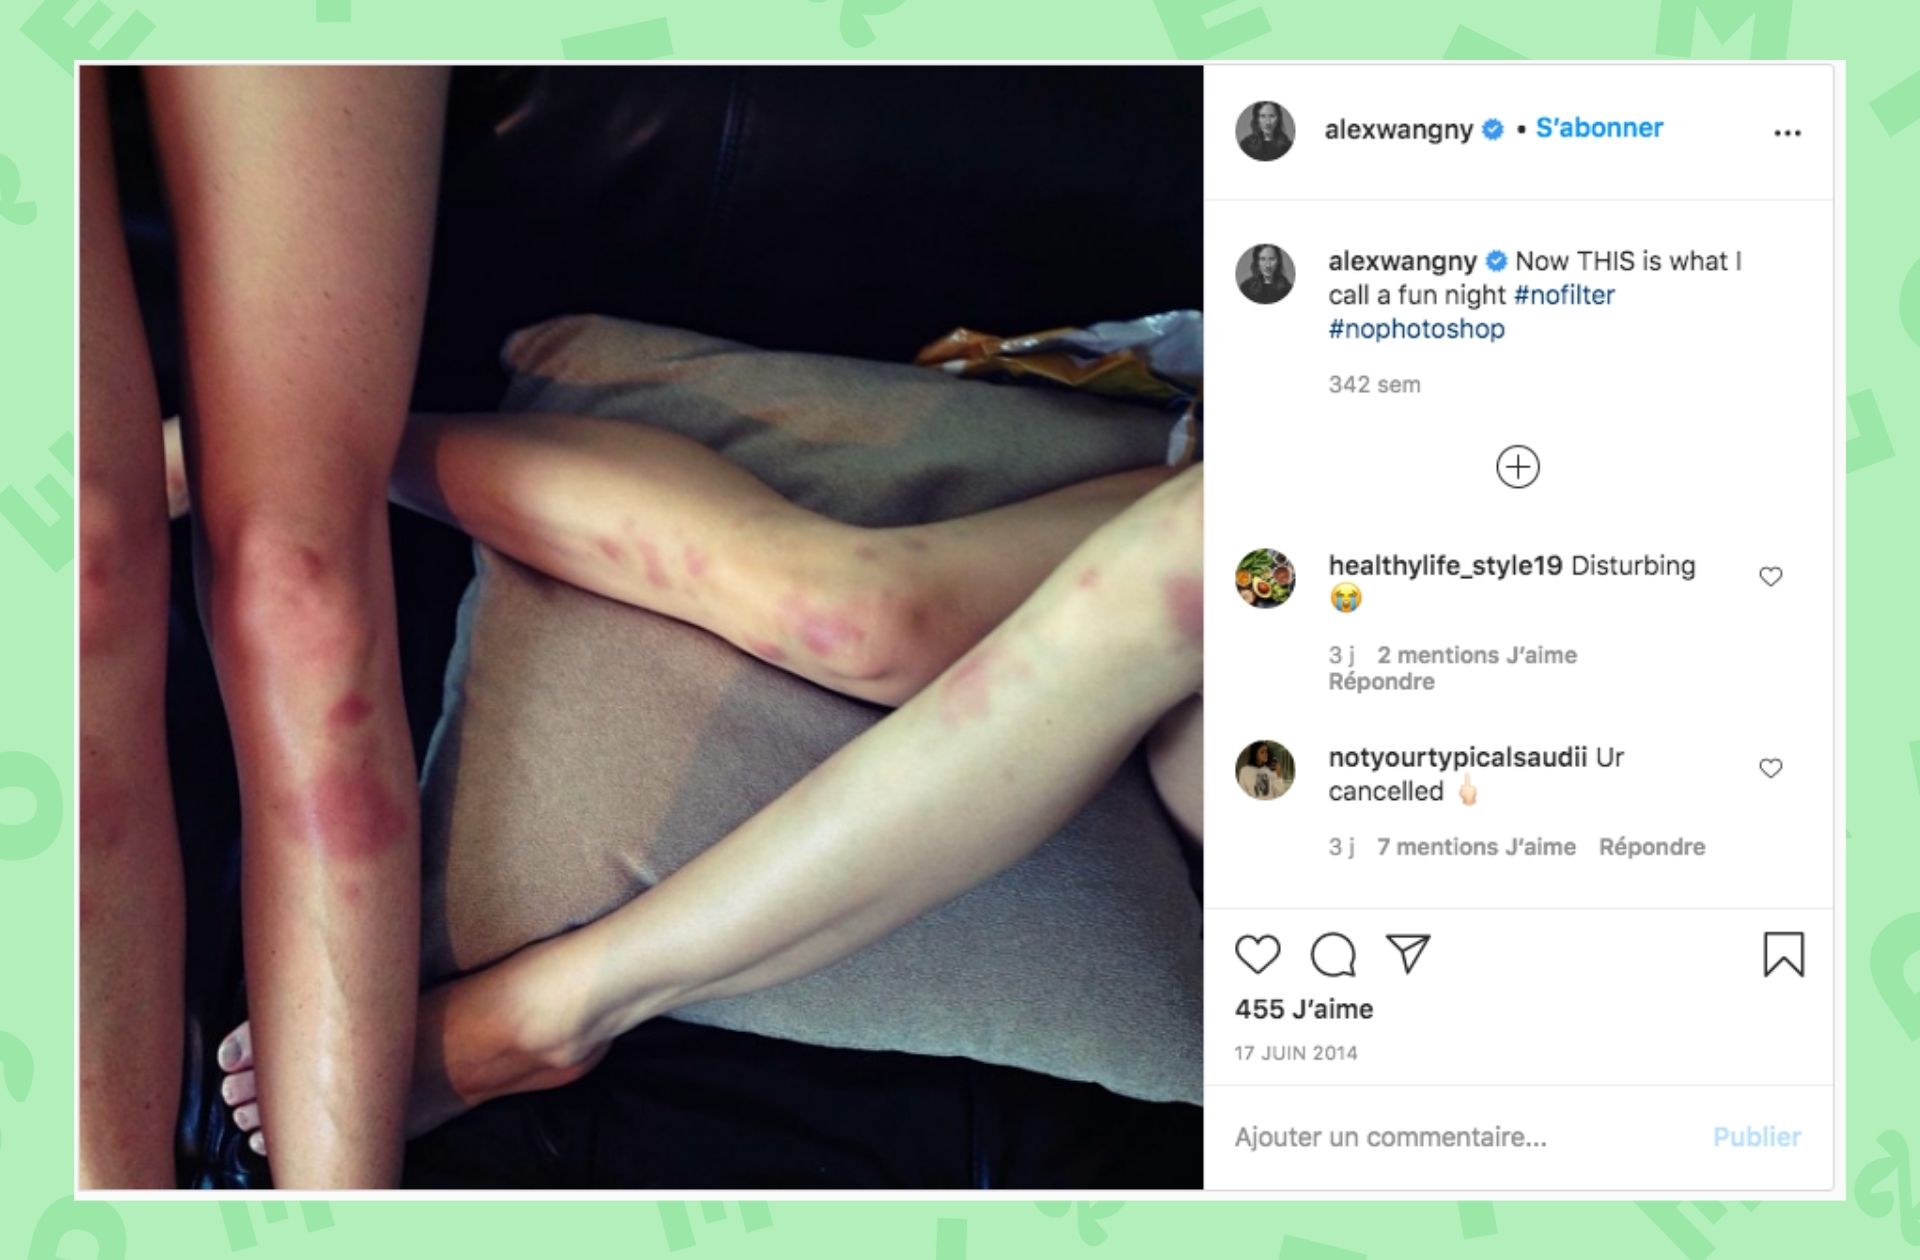 Une publication Instagram compromettante d’Alexander Wang qui s’inscrit dans la culture du viol